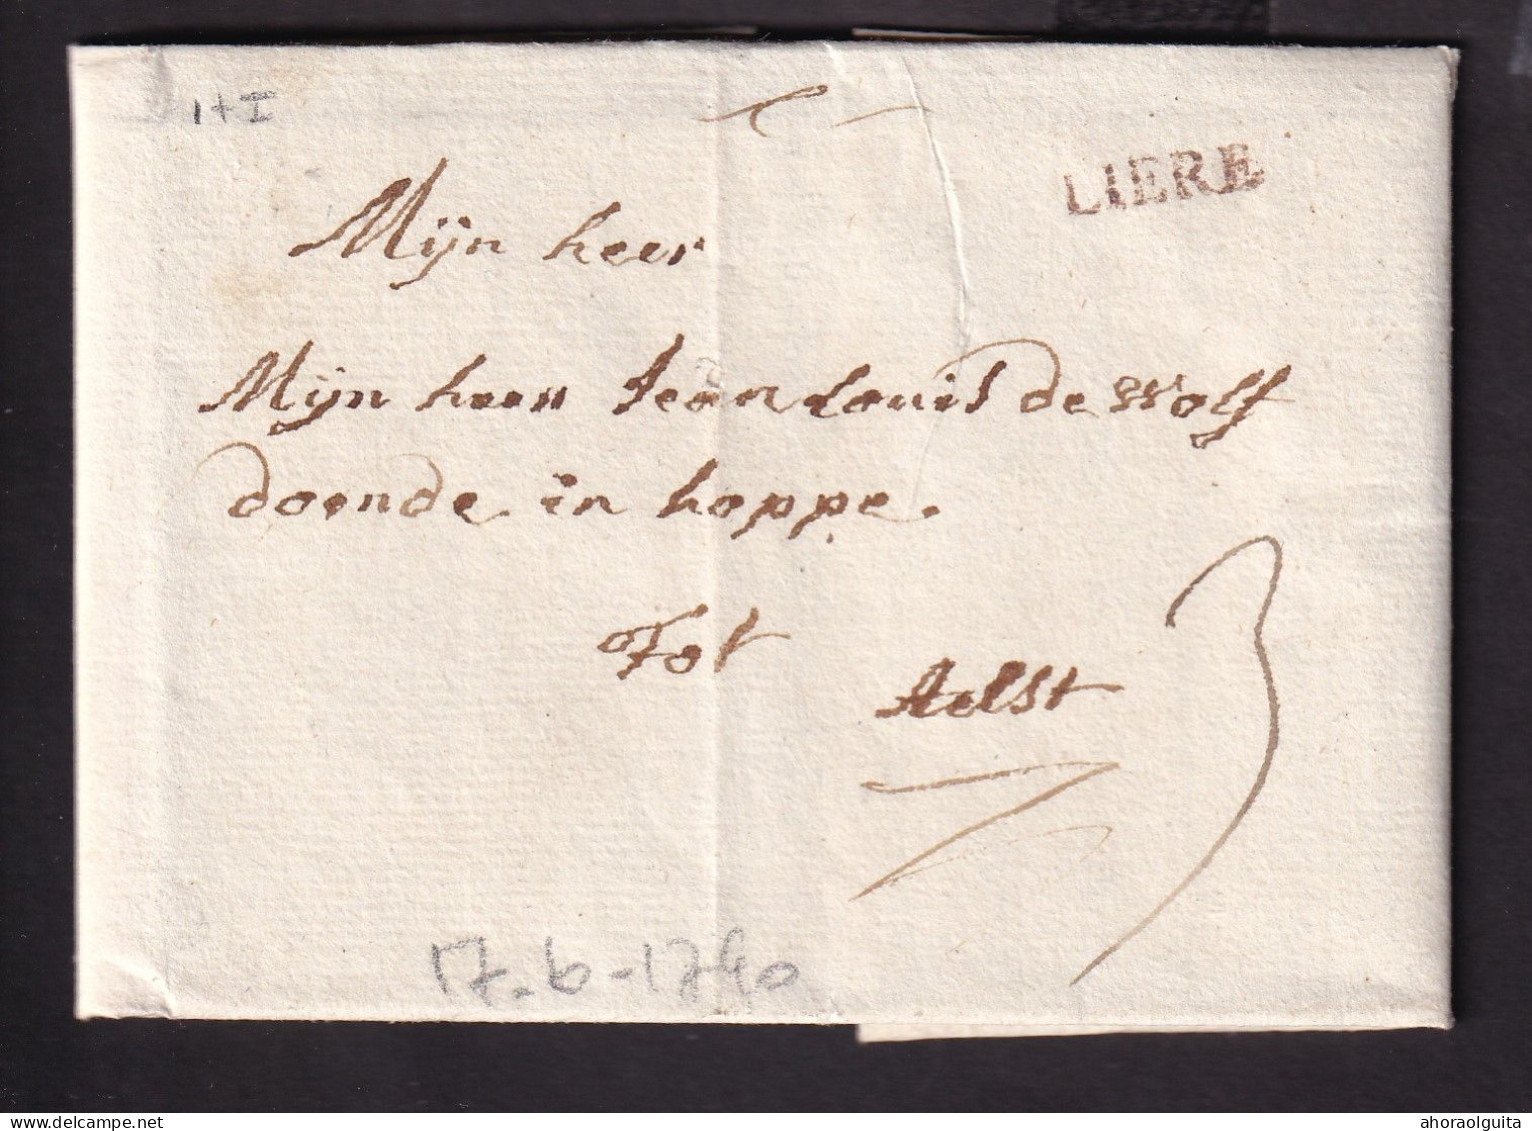 DDCC 403 - Lettre Précurseur 17 Juin 1790 (Révolution Belge) - Griffe H 14 Rouge LIERE Vers AELST - Port 3 St. Encre - 1789-1790 (Rivol. Brabanzona)